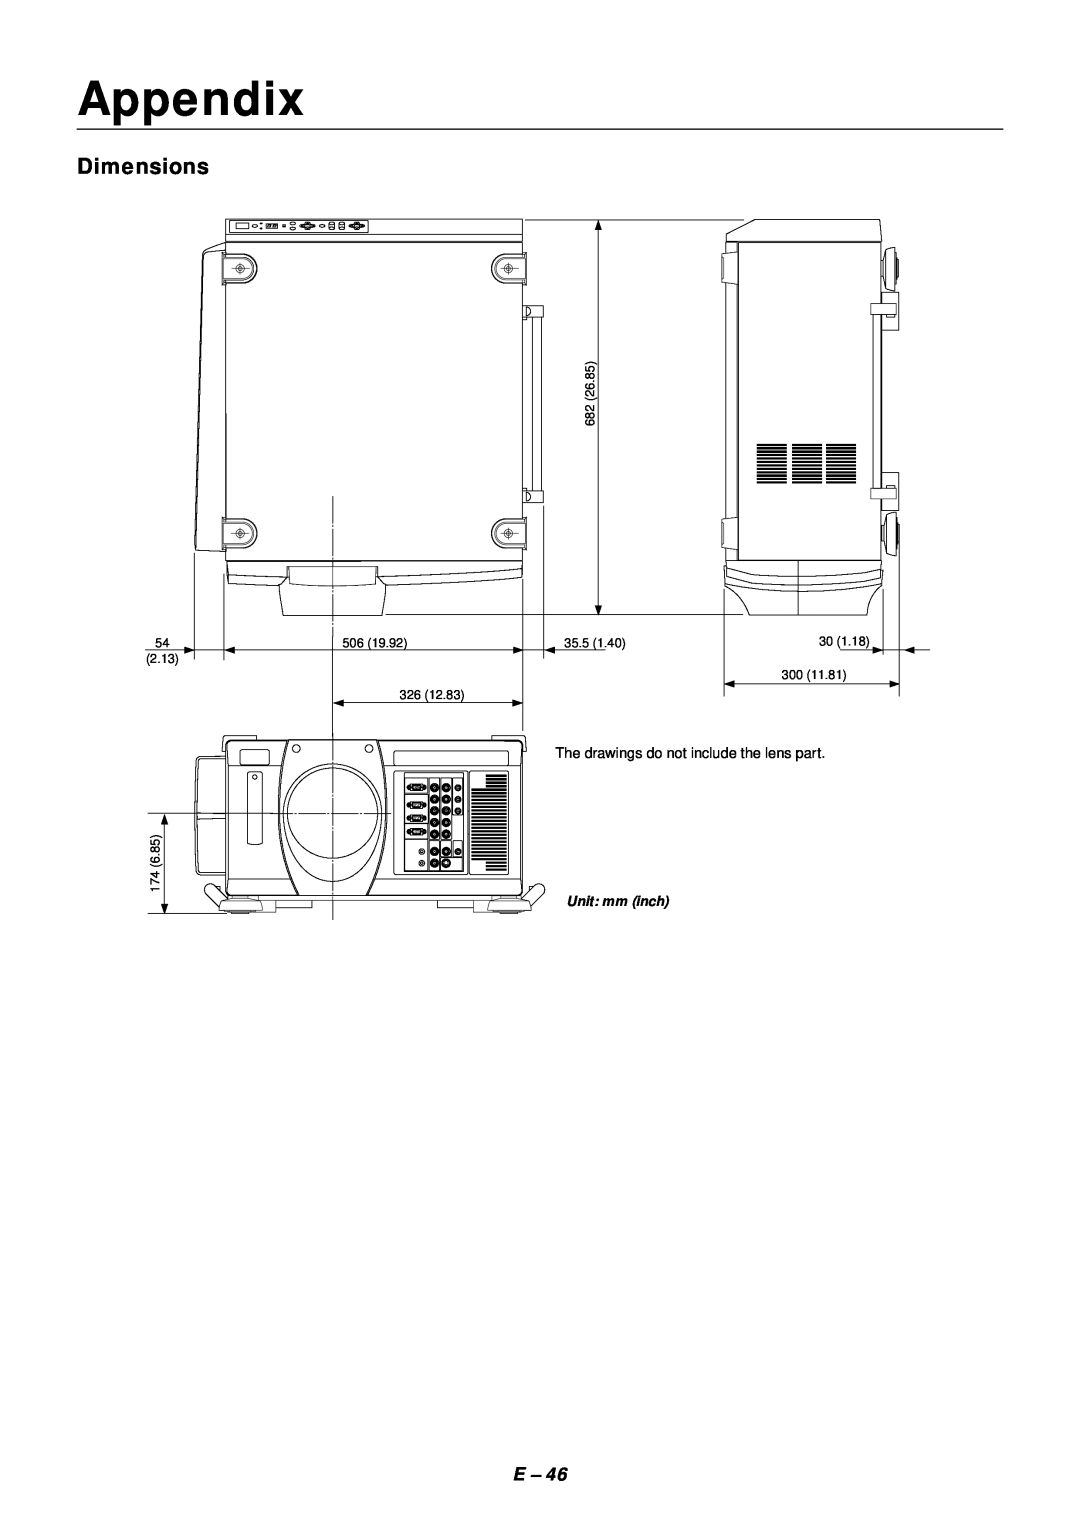 NEC SX4000 user manual Appendix, Dimensions, 35.5, 2.13 